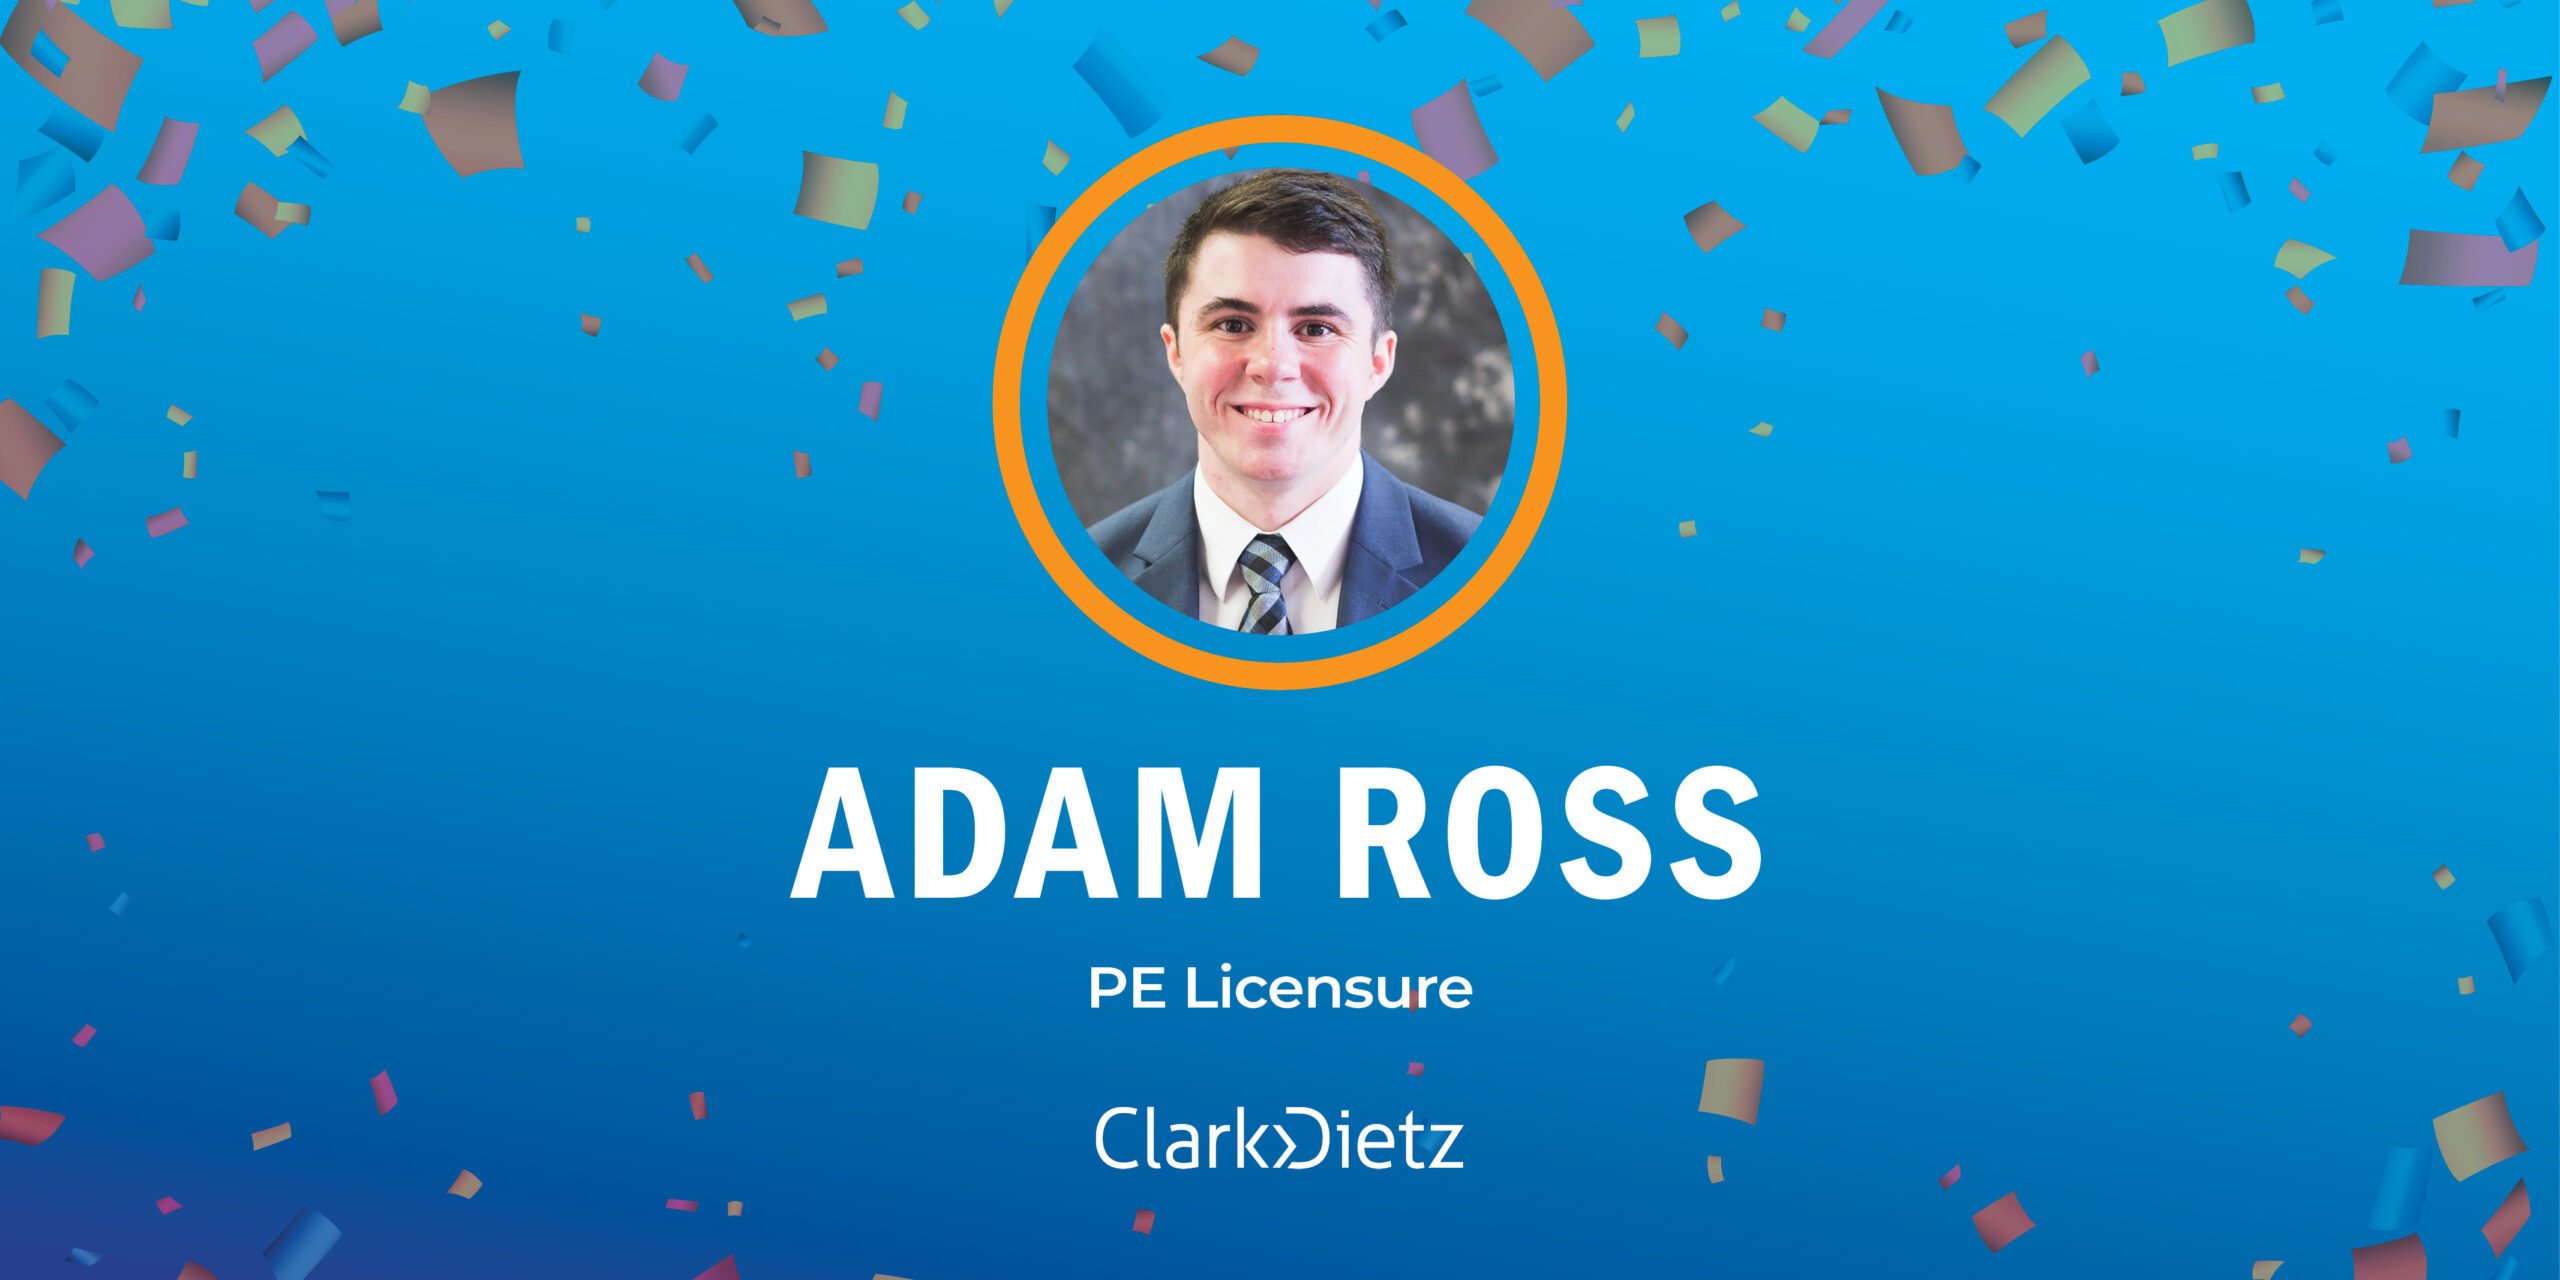 adam ross achieves PE licensure